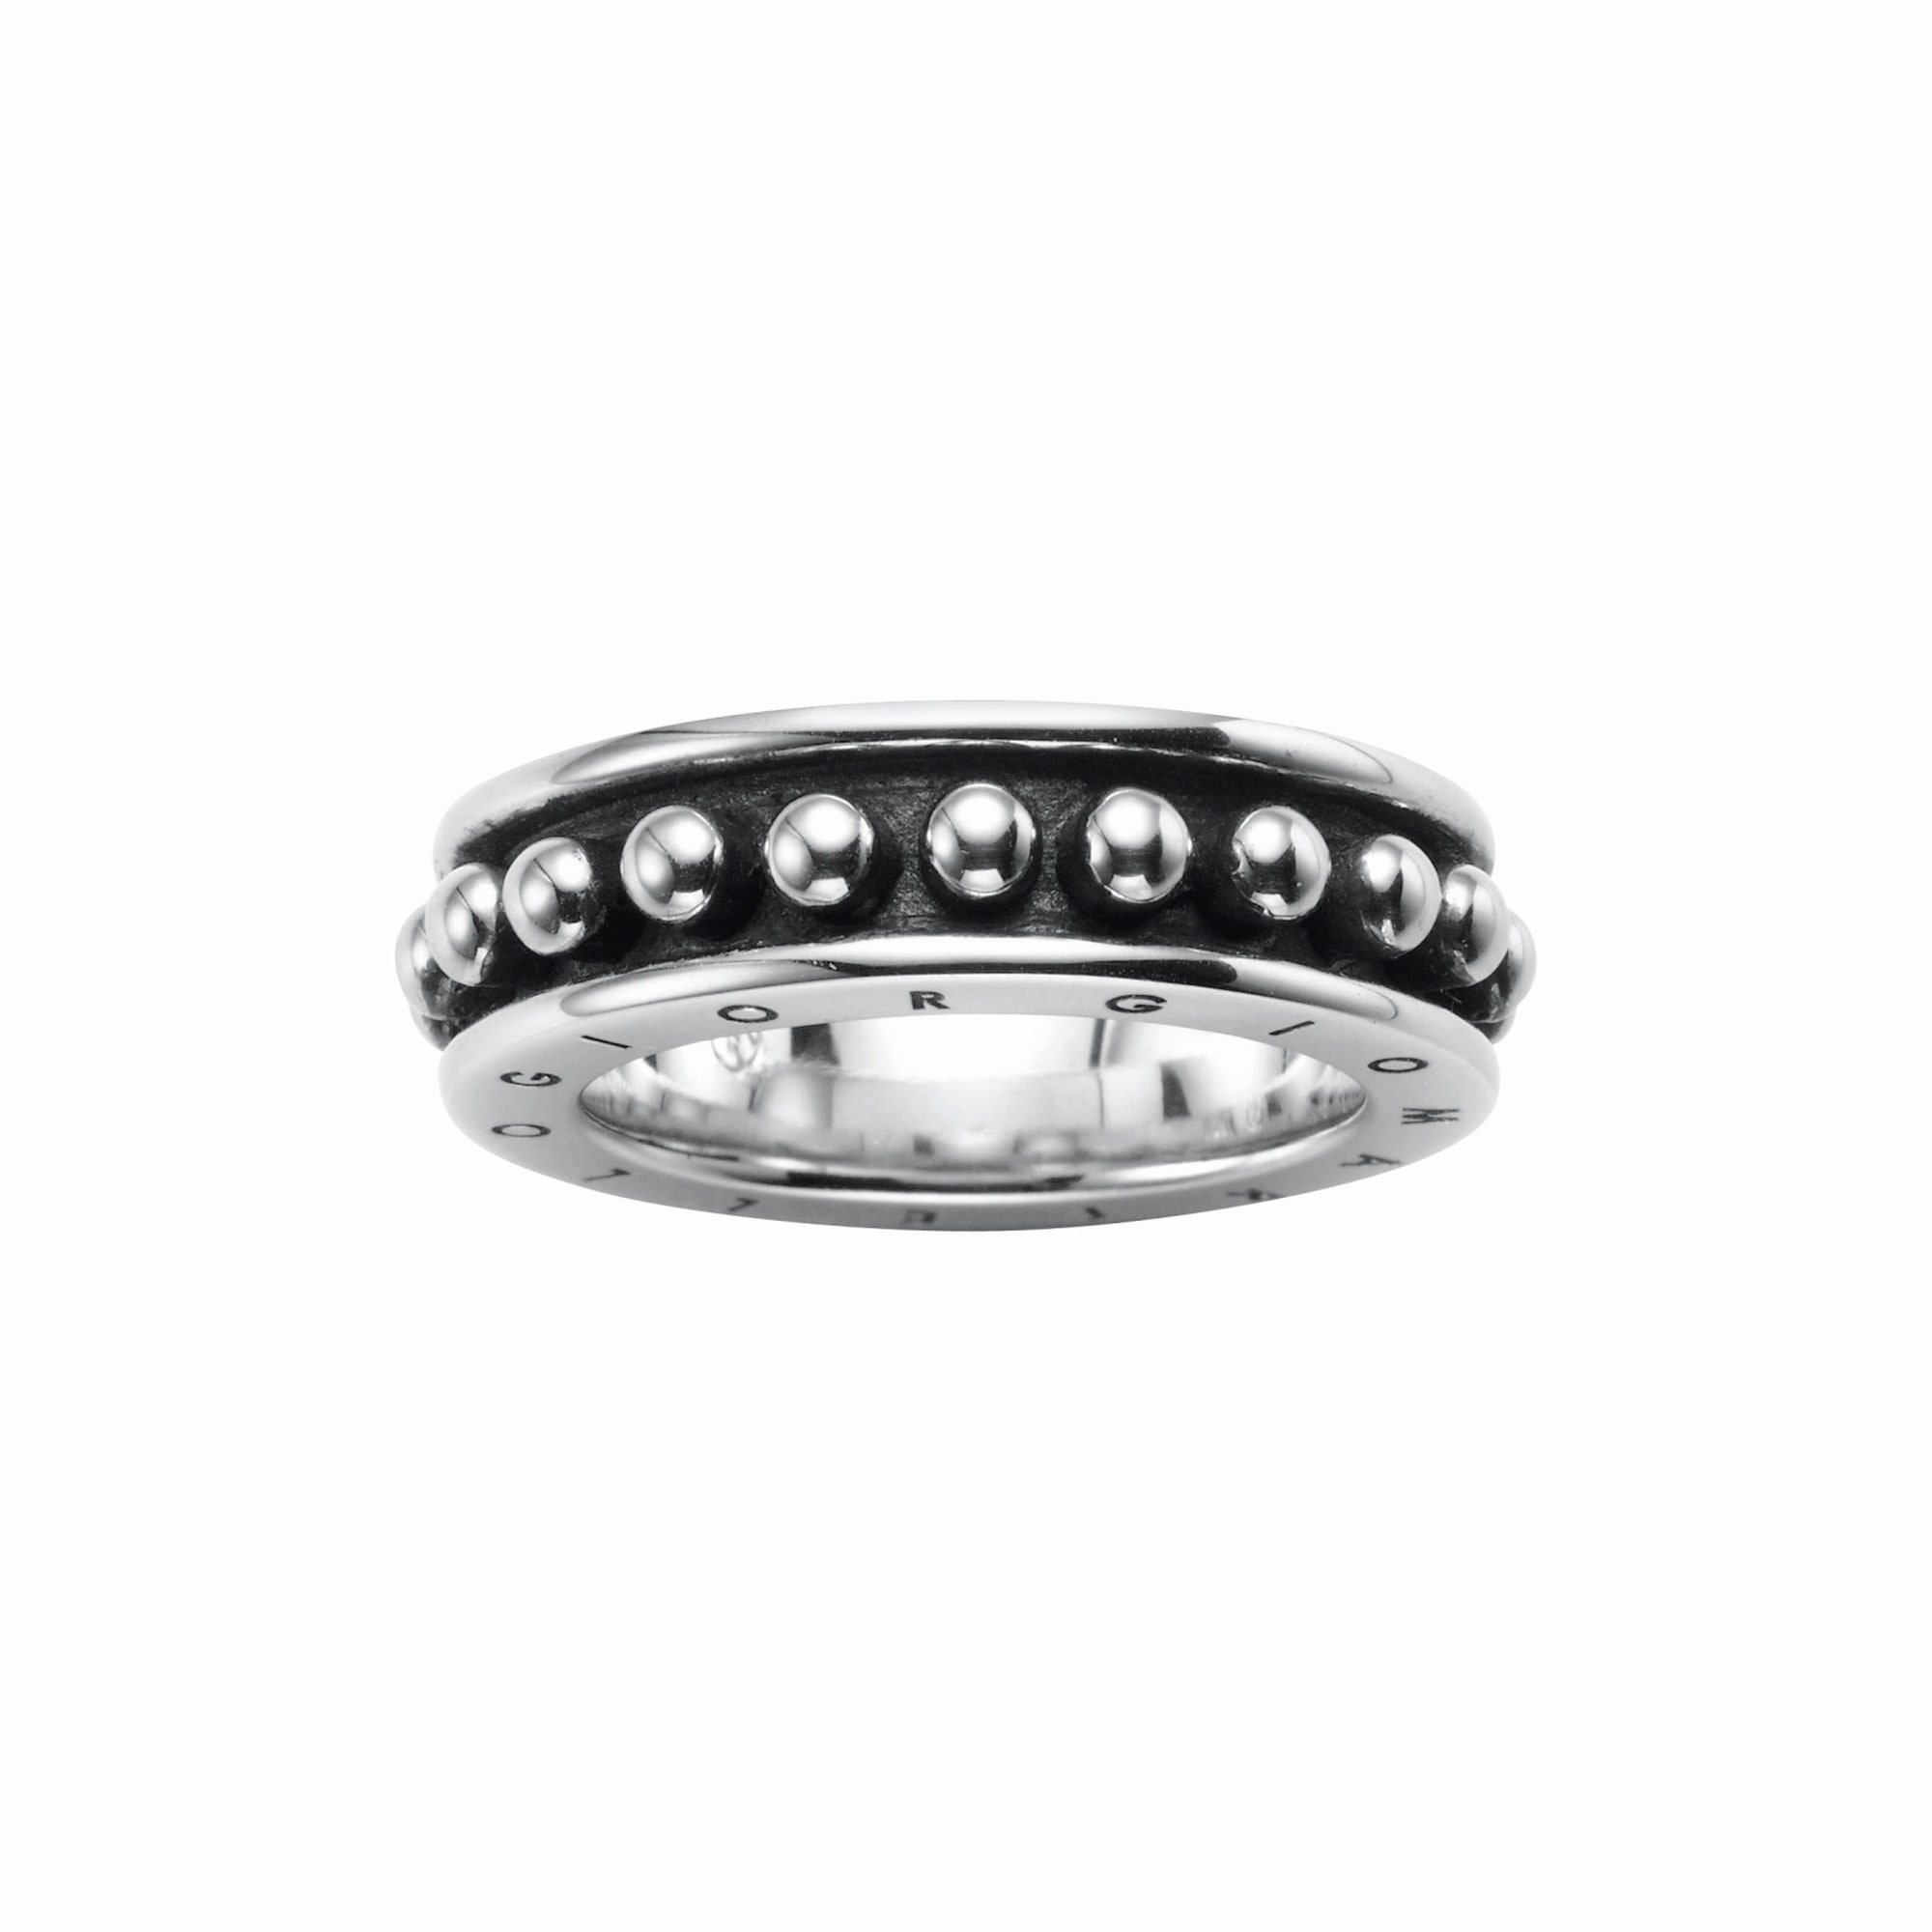 GIORGIO MARTELLO MILANO Silberring »Ring mit Halb-Kugeln, teilweise  oxydiert, Silber 925« online kaufen bei OTTO